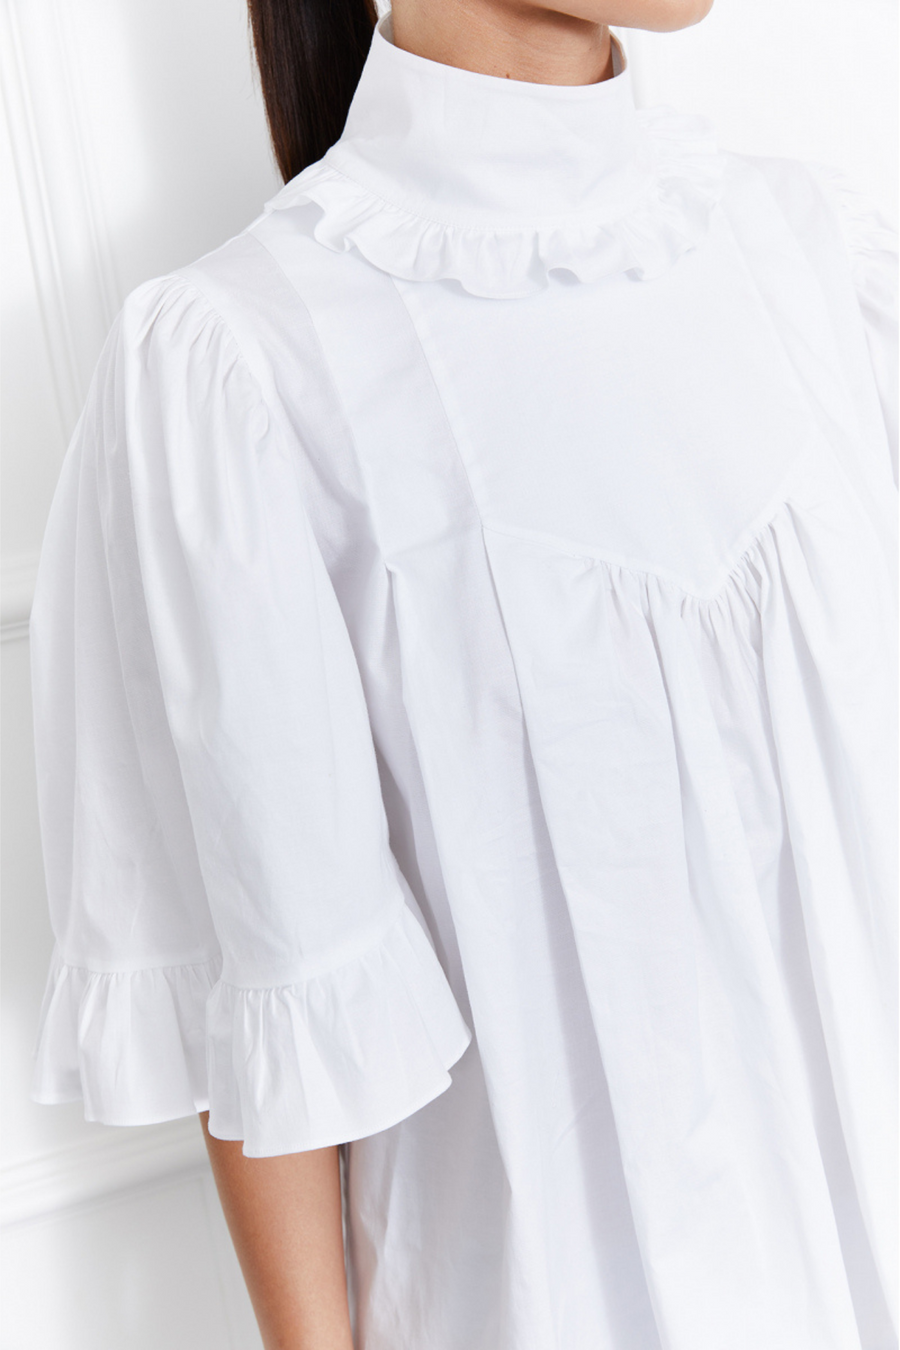 Lulu Dress (White)